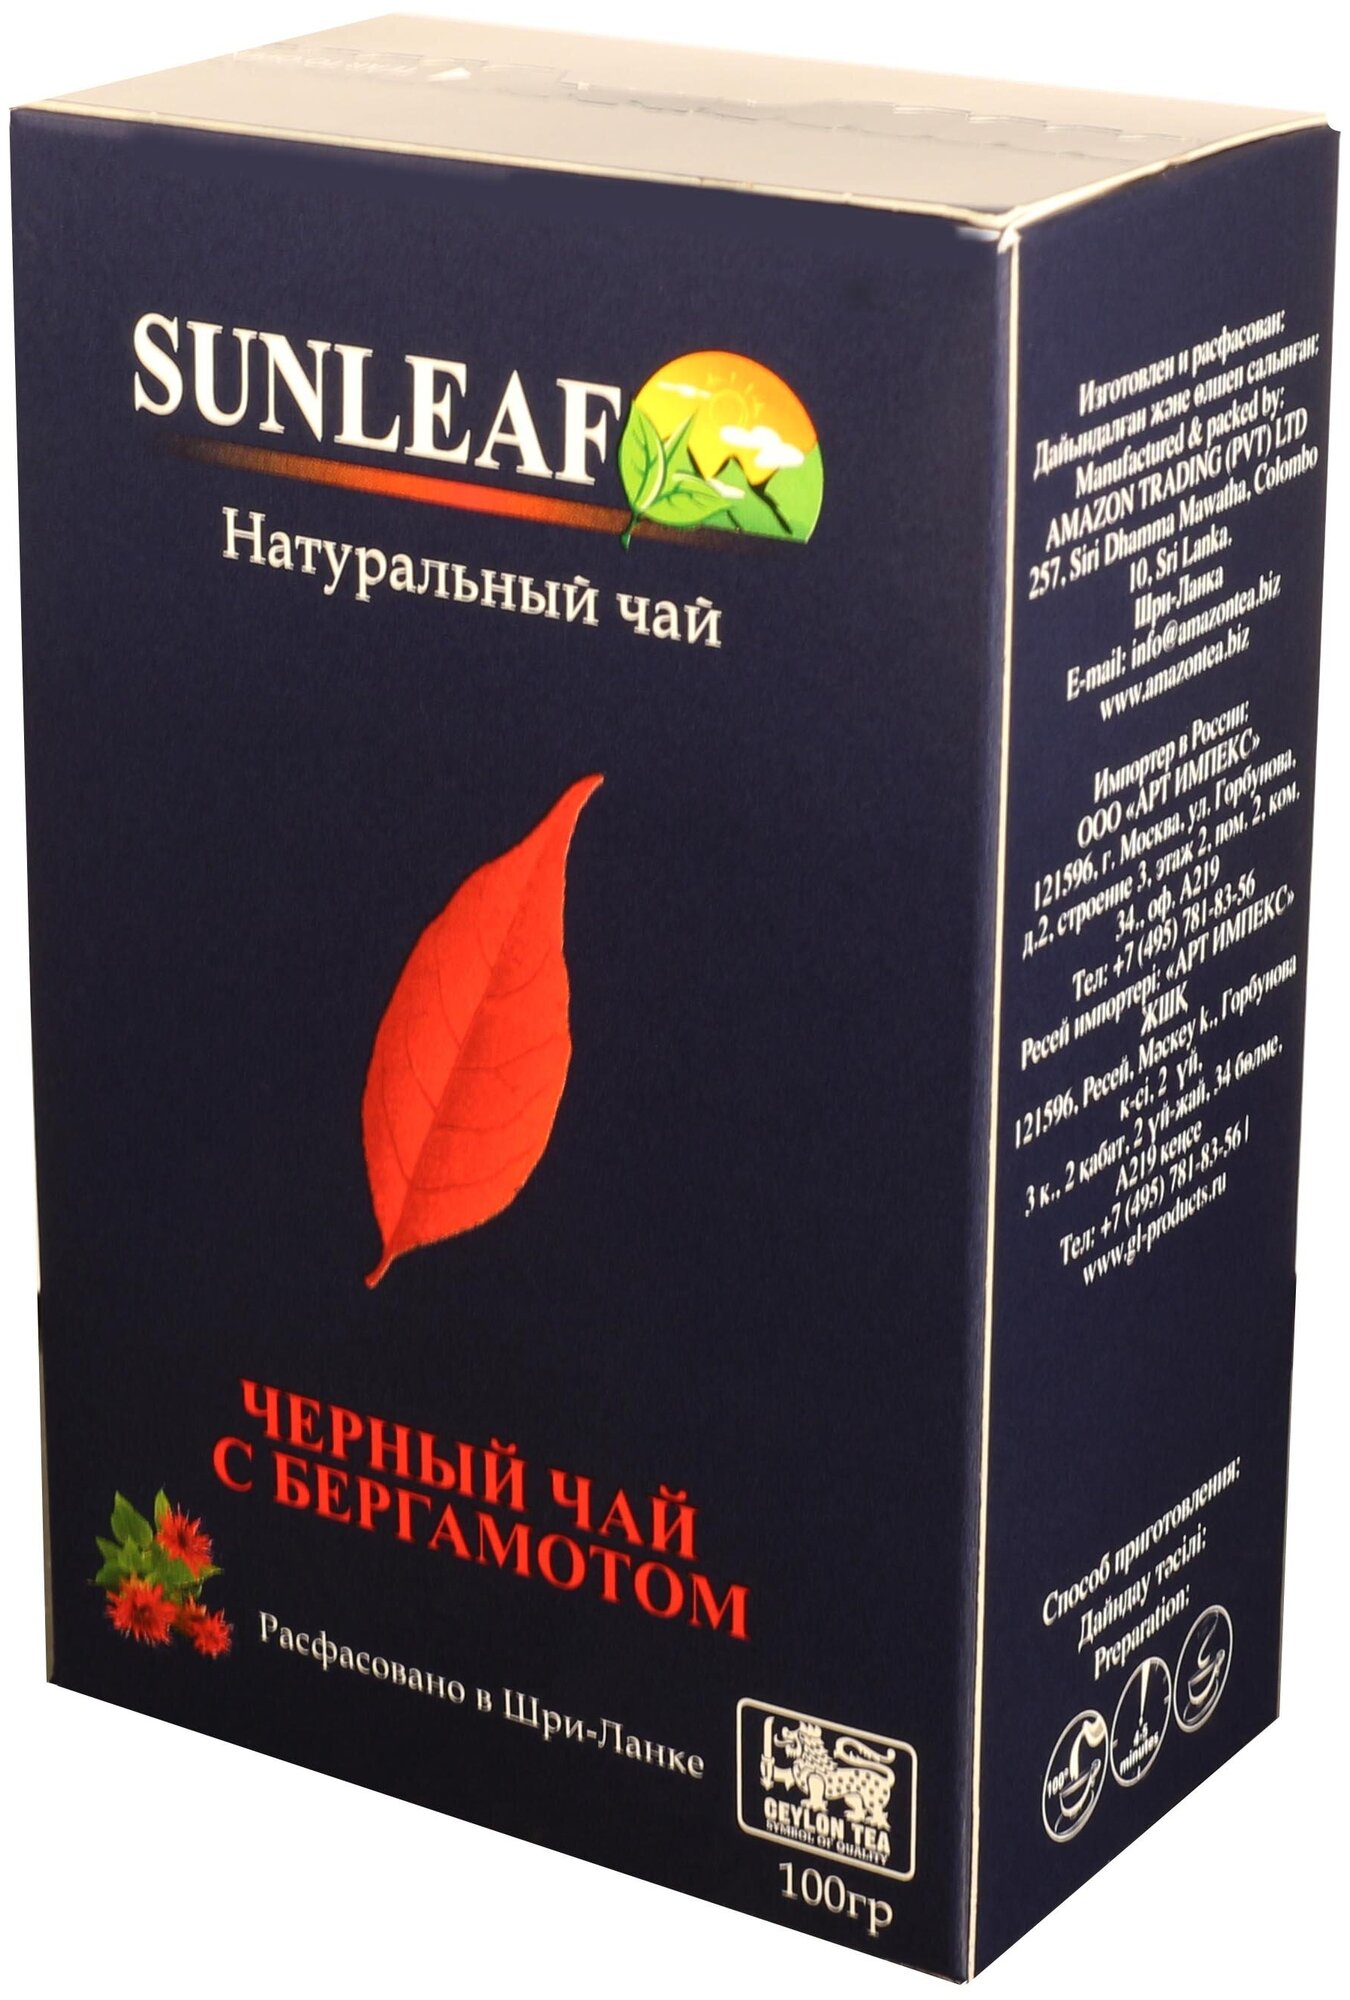 Чай черный Sunleaf Earl Grey, 100 г / листовой черный цейлонский чай / чай с бергамотом / Эрл Грей - фотография № 2